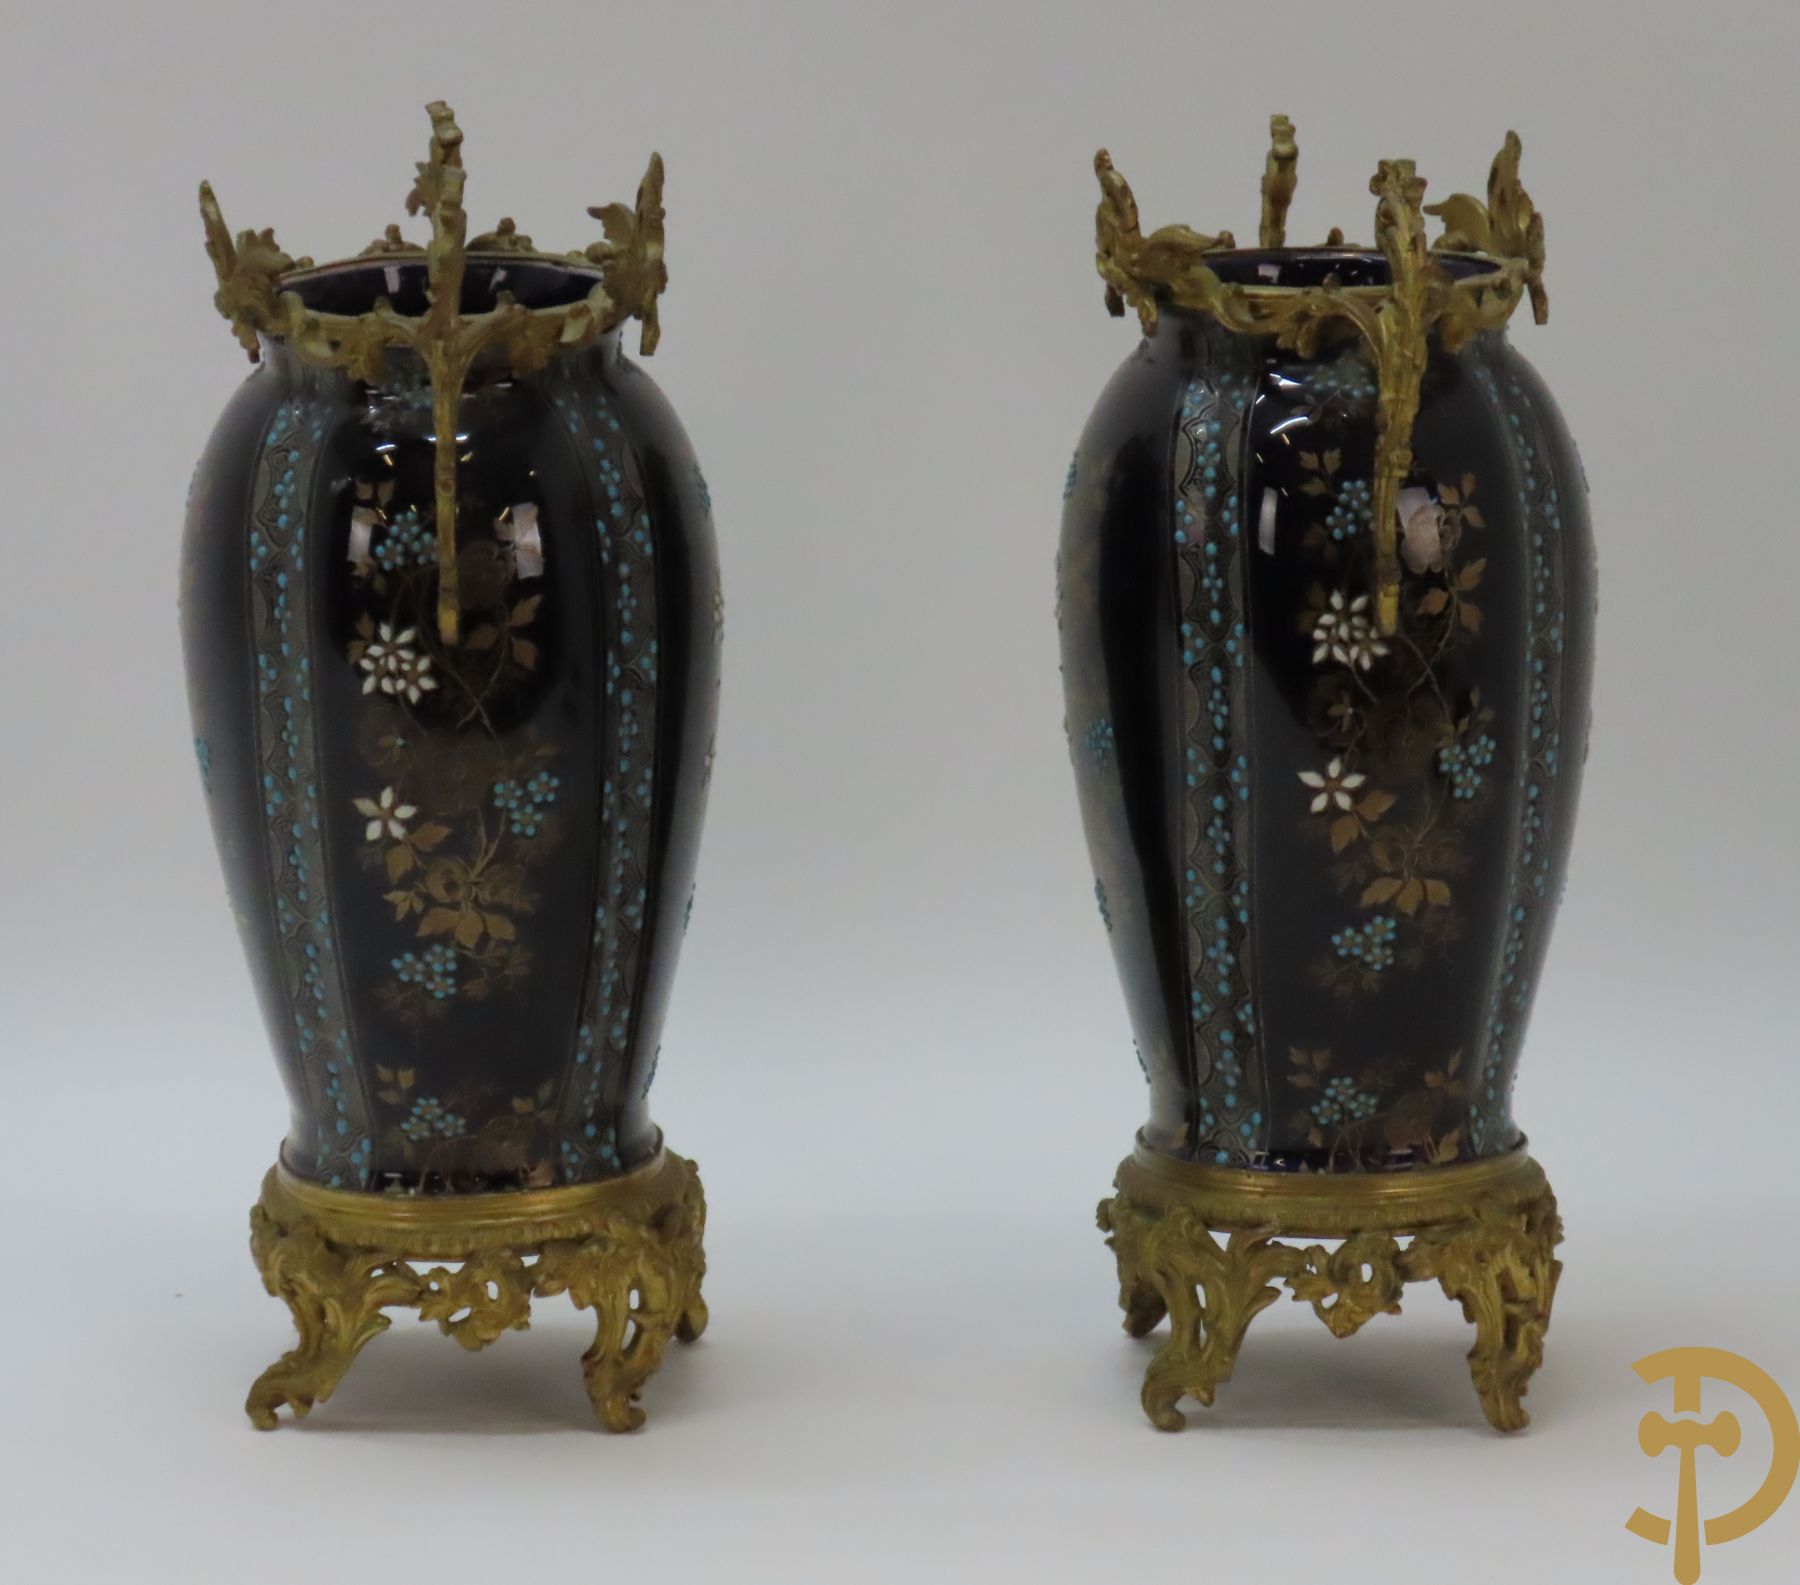 Paar kobaltblauwe porseleinen vazen met bloemendecor gevat in bronzen houder met bronsbeslag van accanthusranken